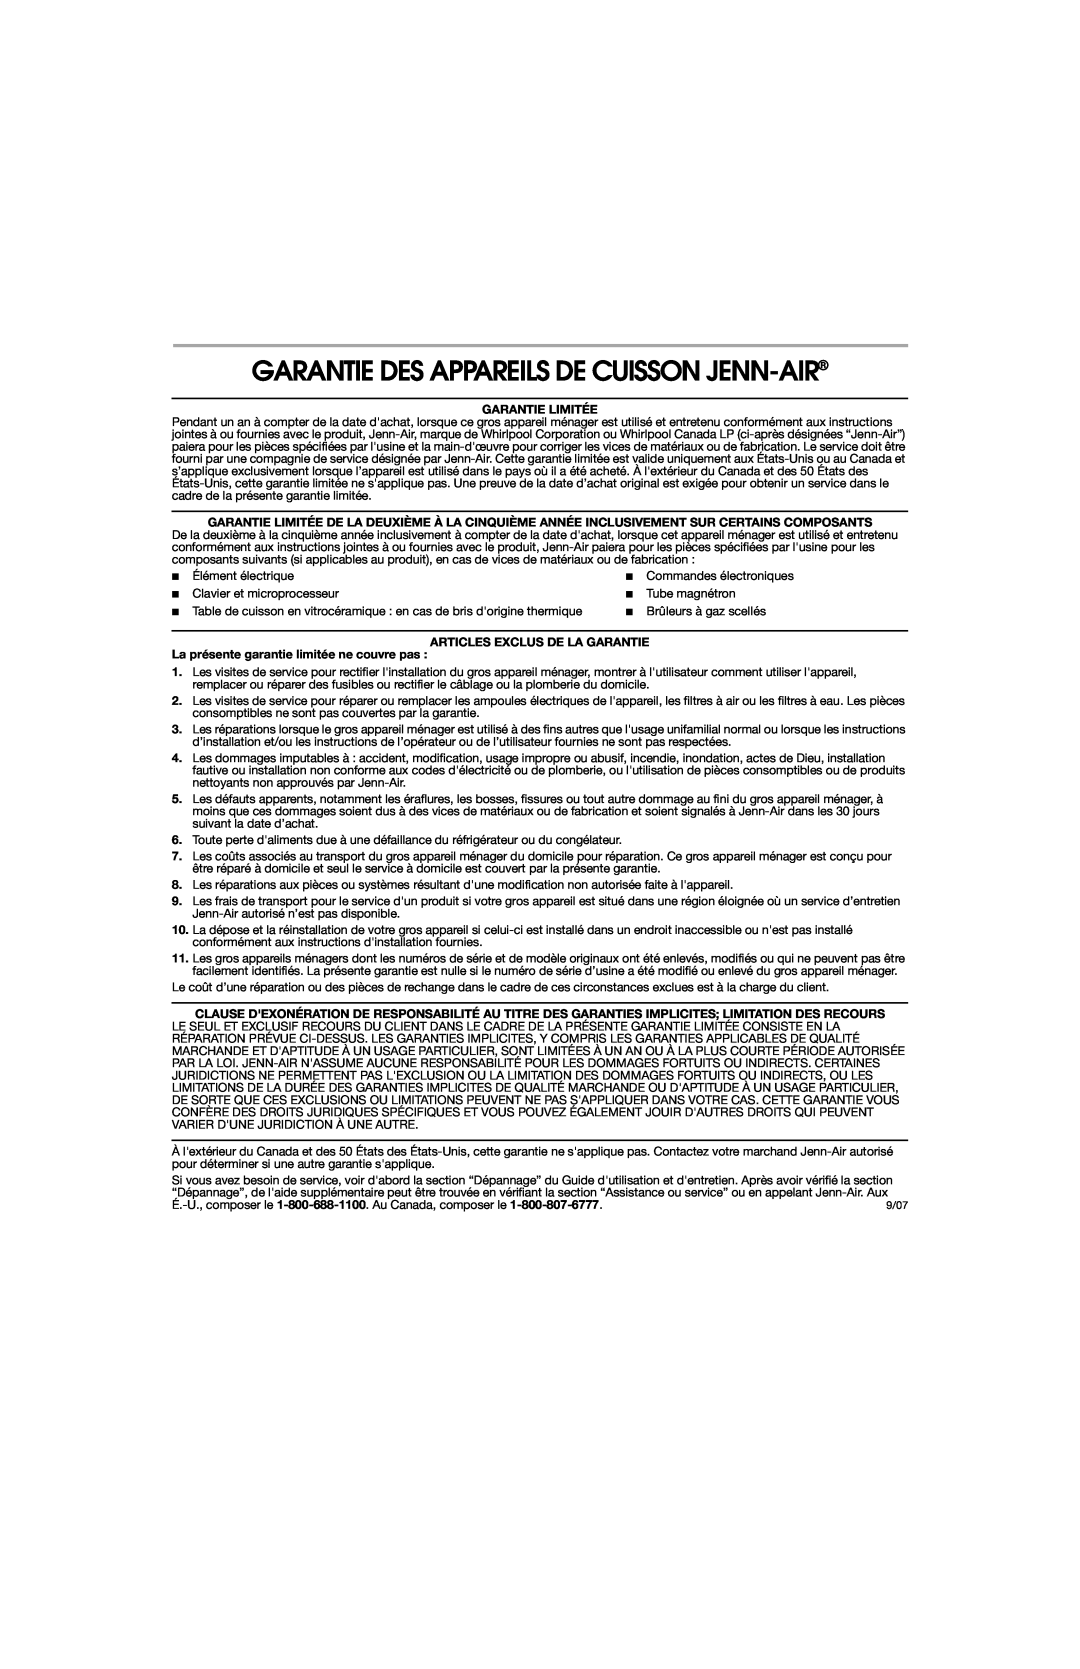 Jenn-Air 8113P753-60 Garantie Des Appareils De Cuisson Jenn-Air, Garantie Limitée, Articles Exclus De La Garantie 